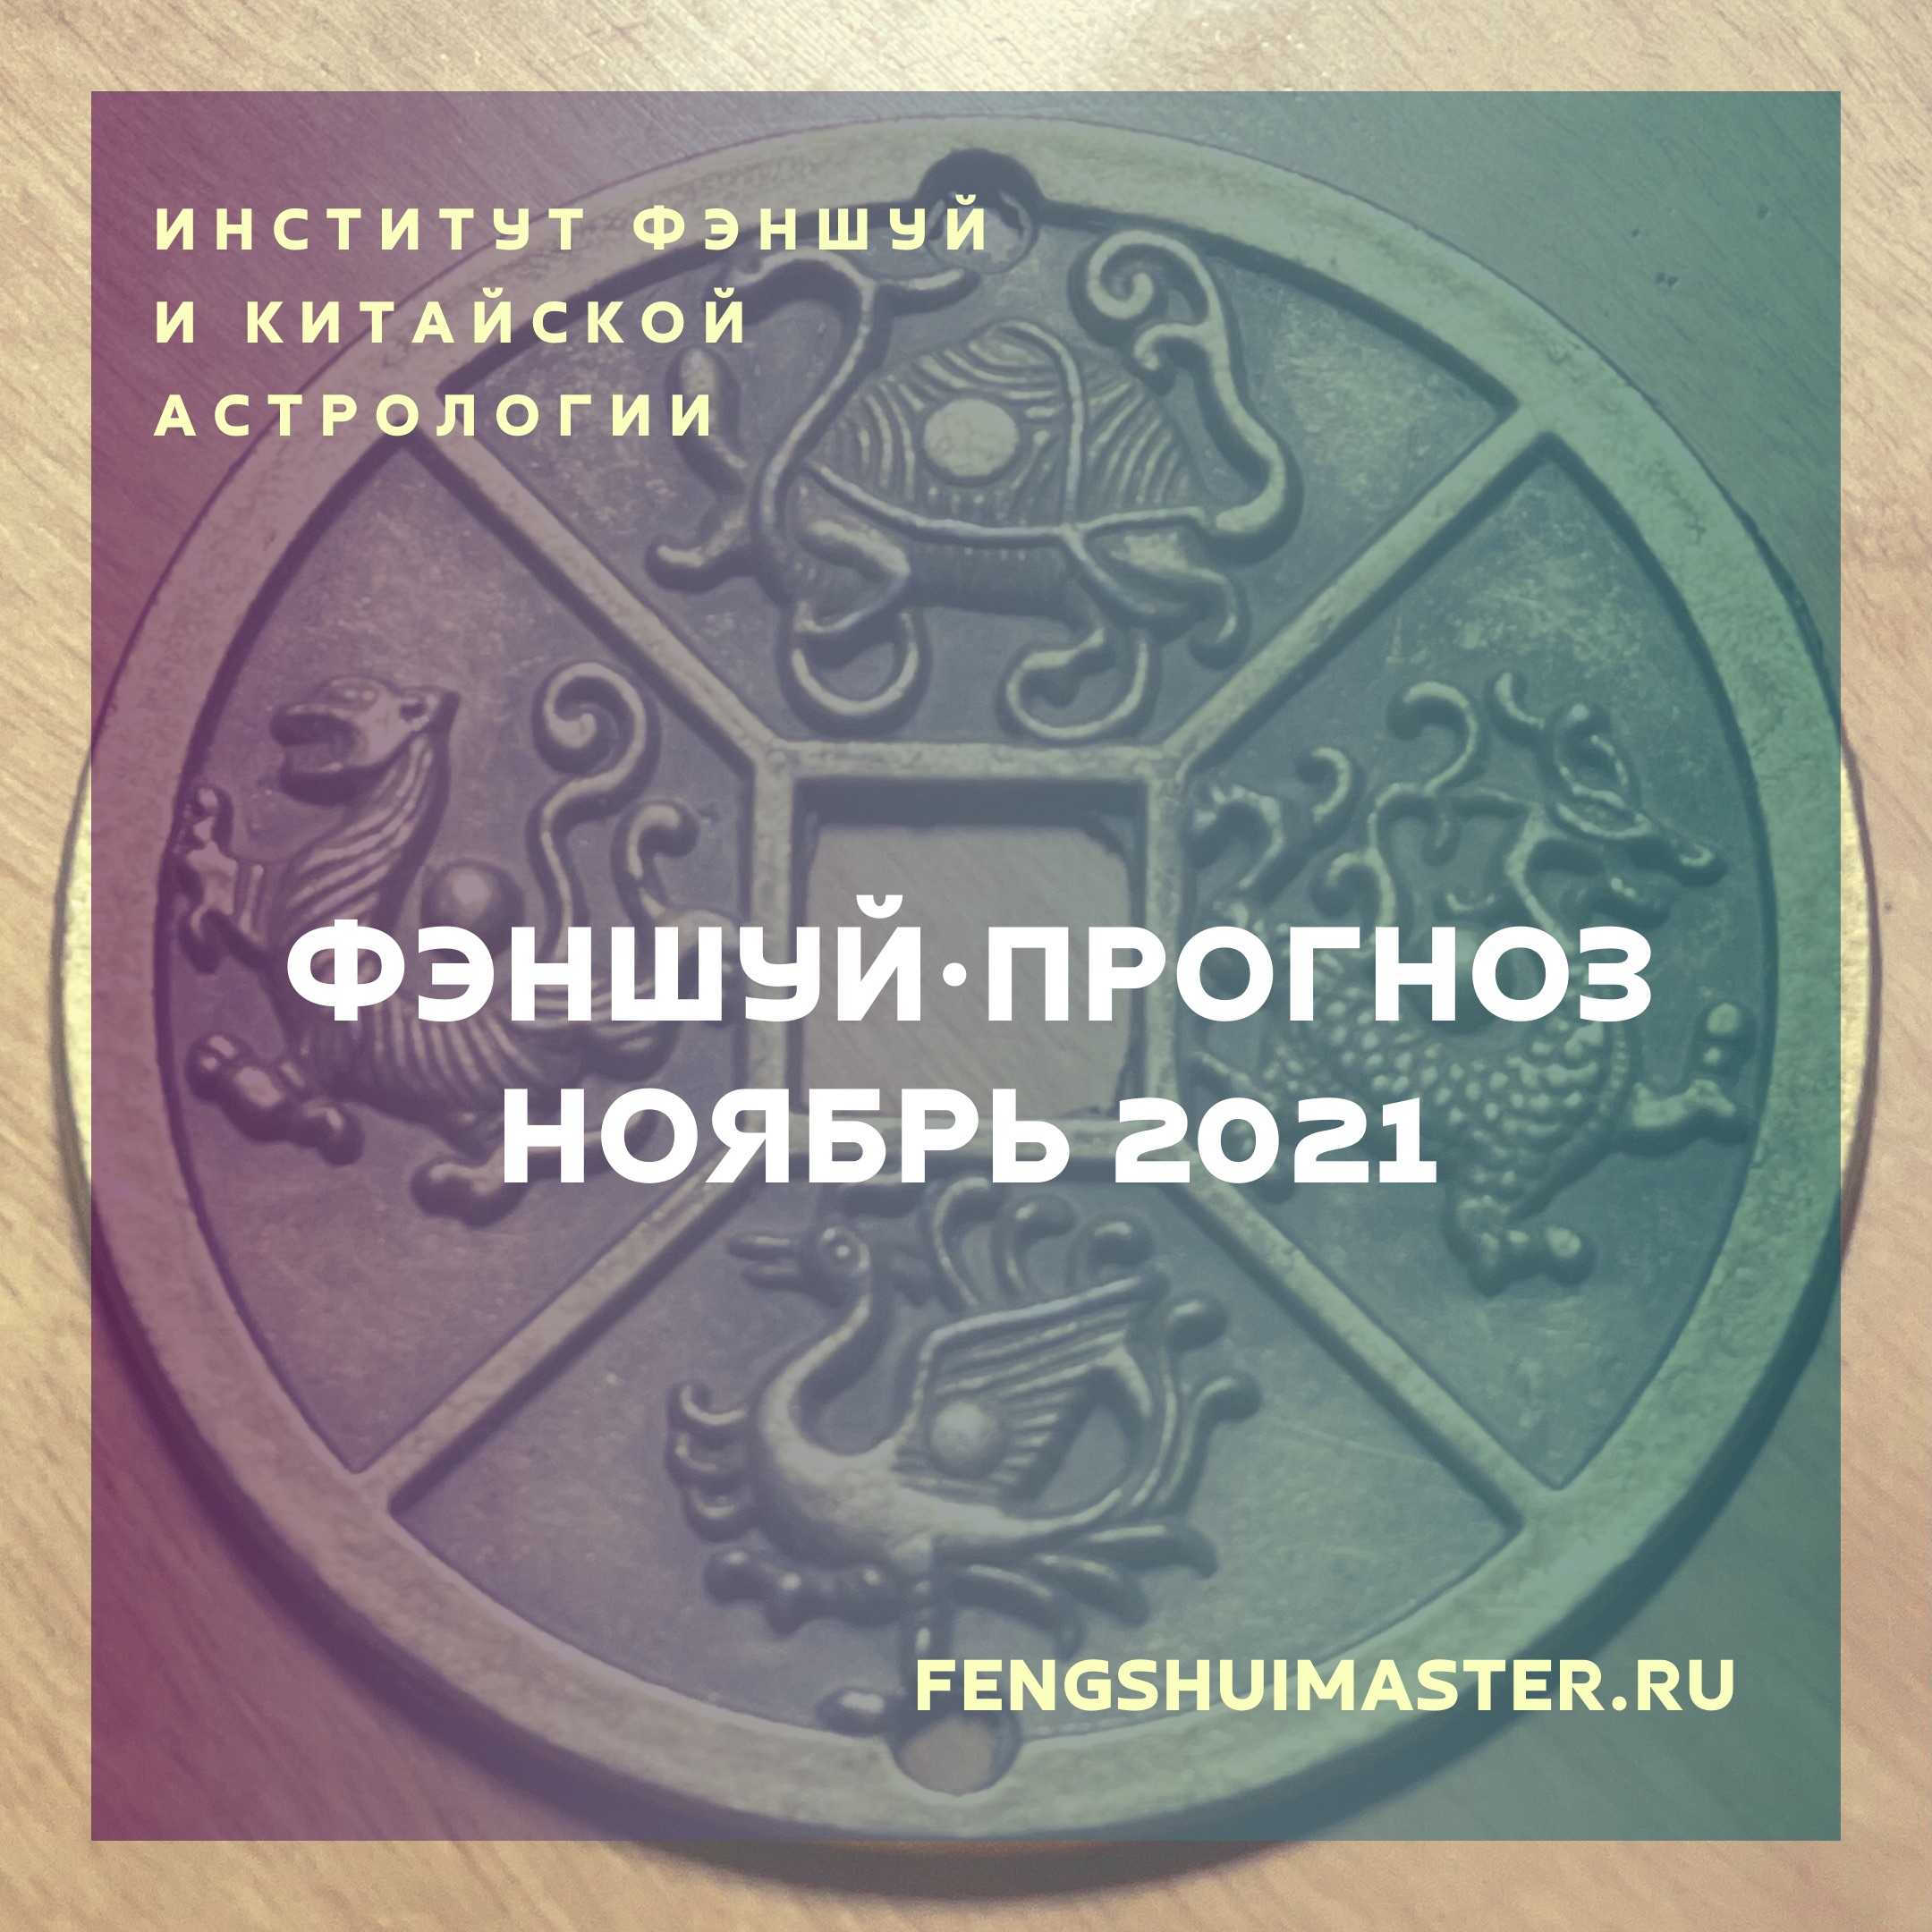 Фэншуй-прогноз ноябрь 2021 • Fengshuimaster.Ru